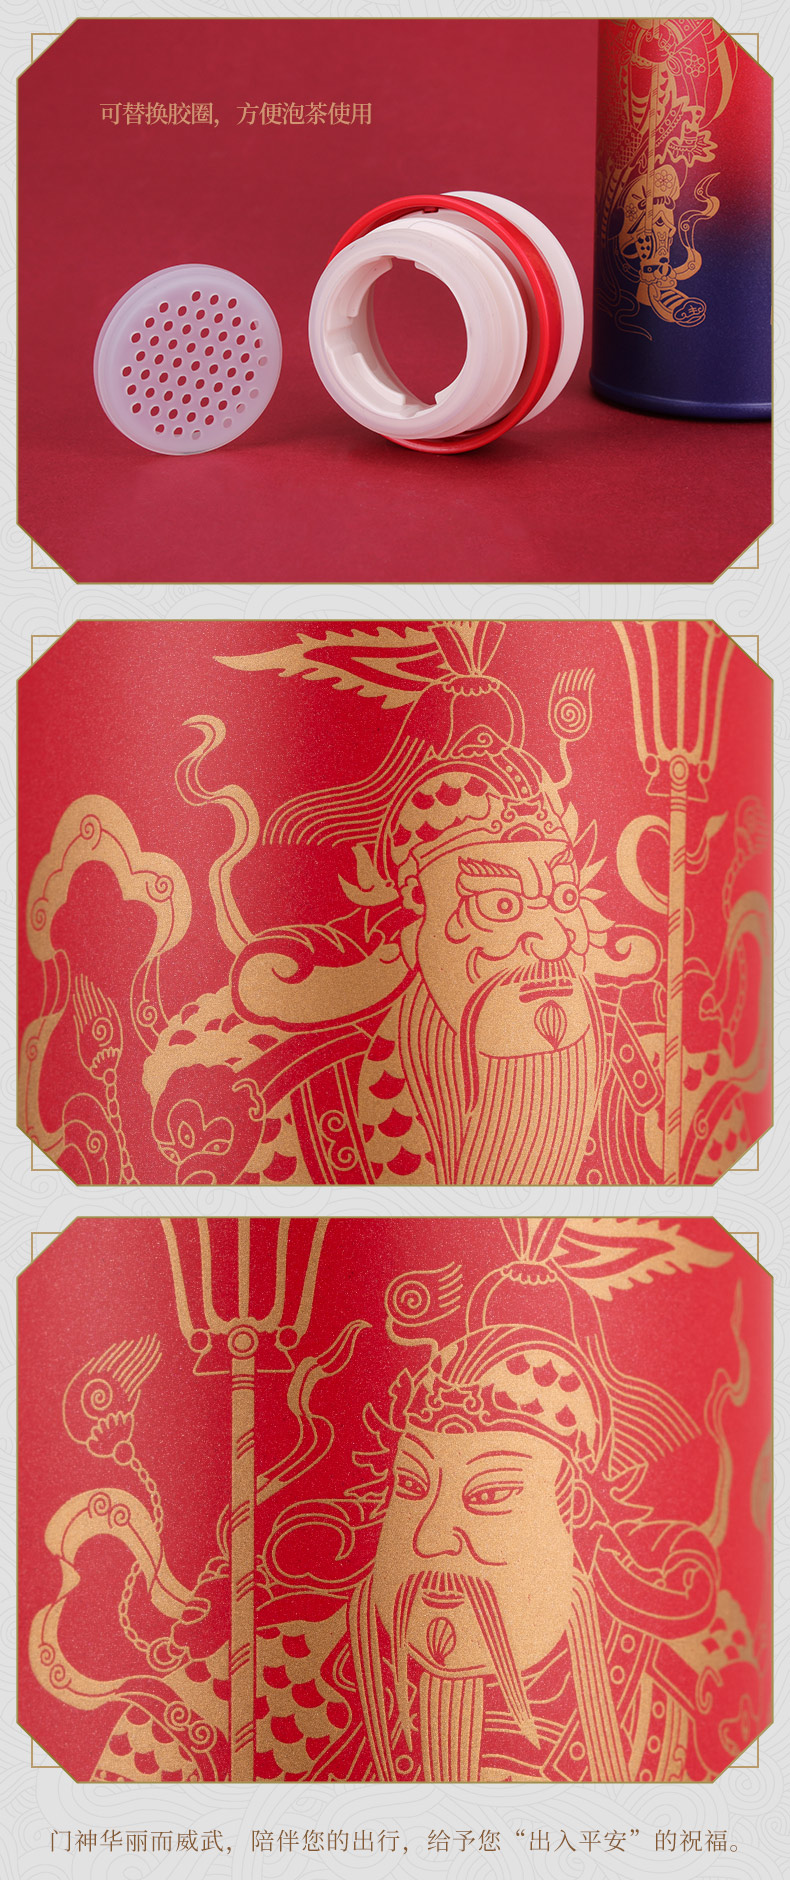 故宫文化 神来运旺保温杯男女 便携直身水杯不锈钢内胆杯子 故宫博物院文创 生日礼物 红色